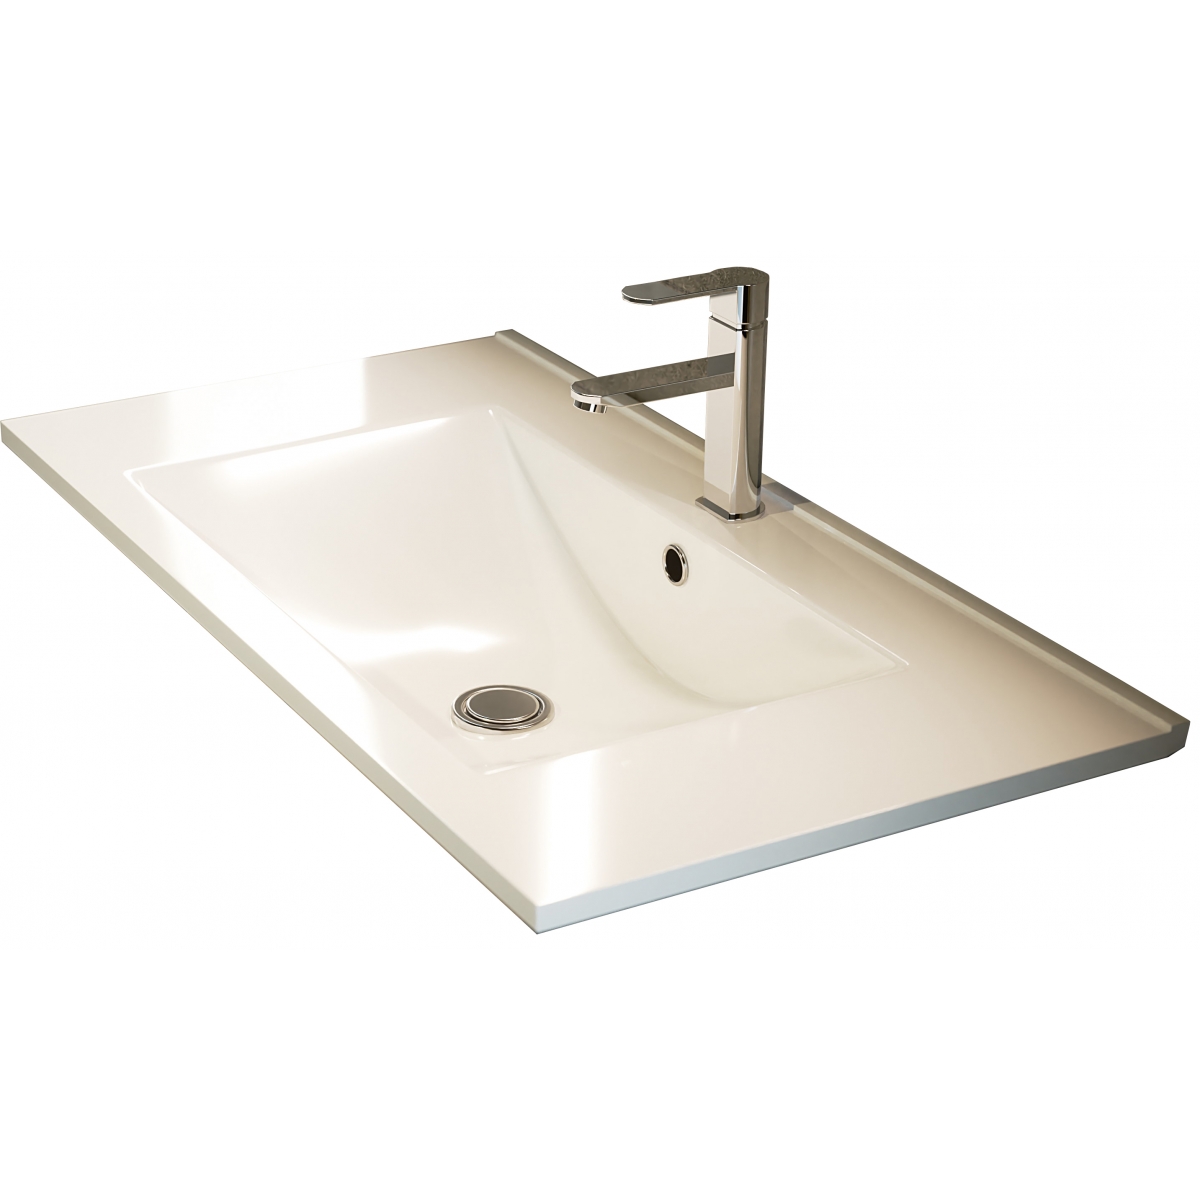 Fotos ambiente de Mueble de baño suspendido Dover de 100 cm de ancho color Hiberian con lavabo integrado [55080]